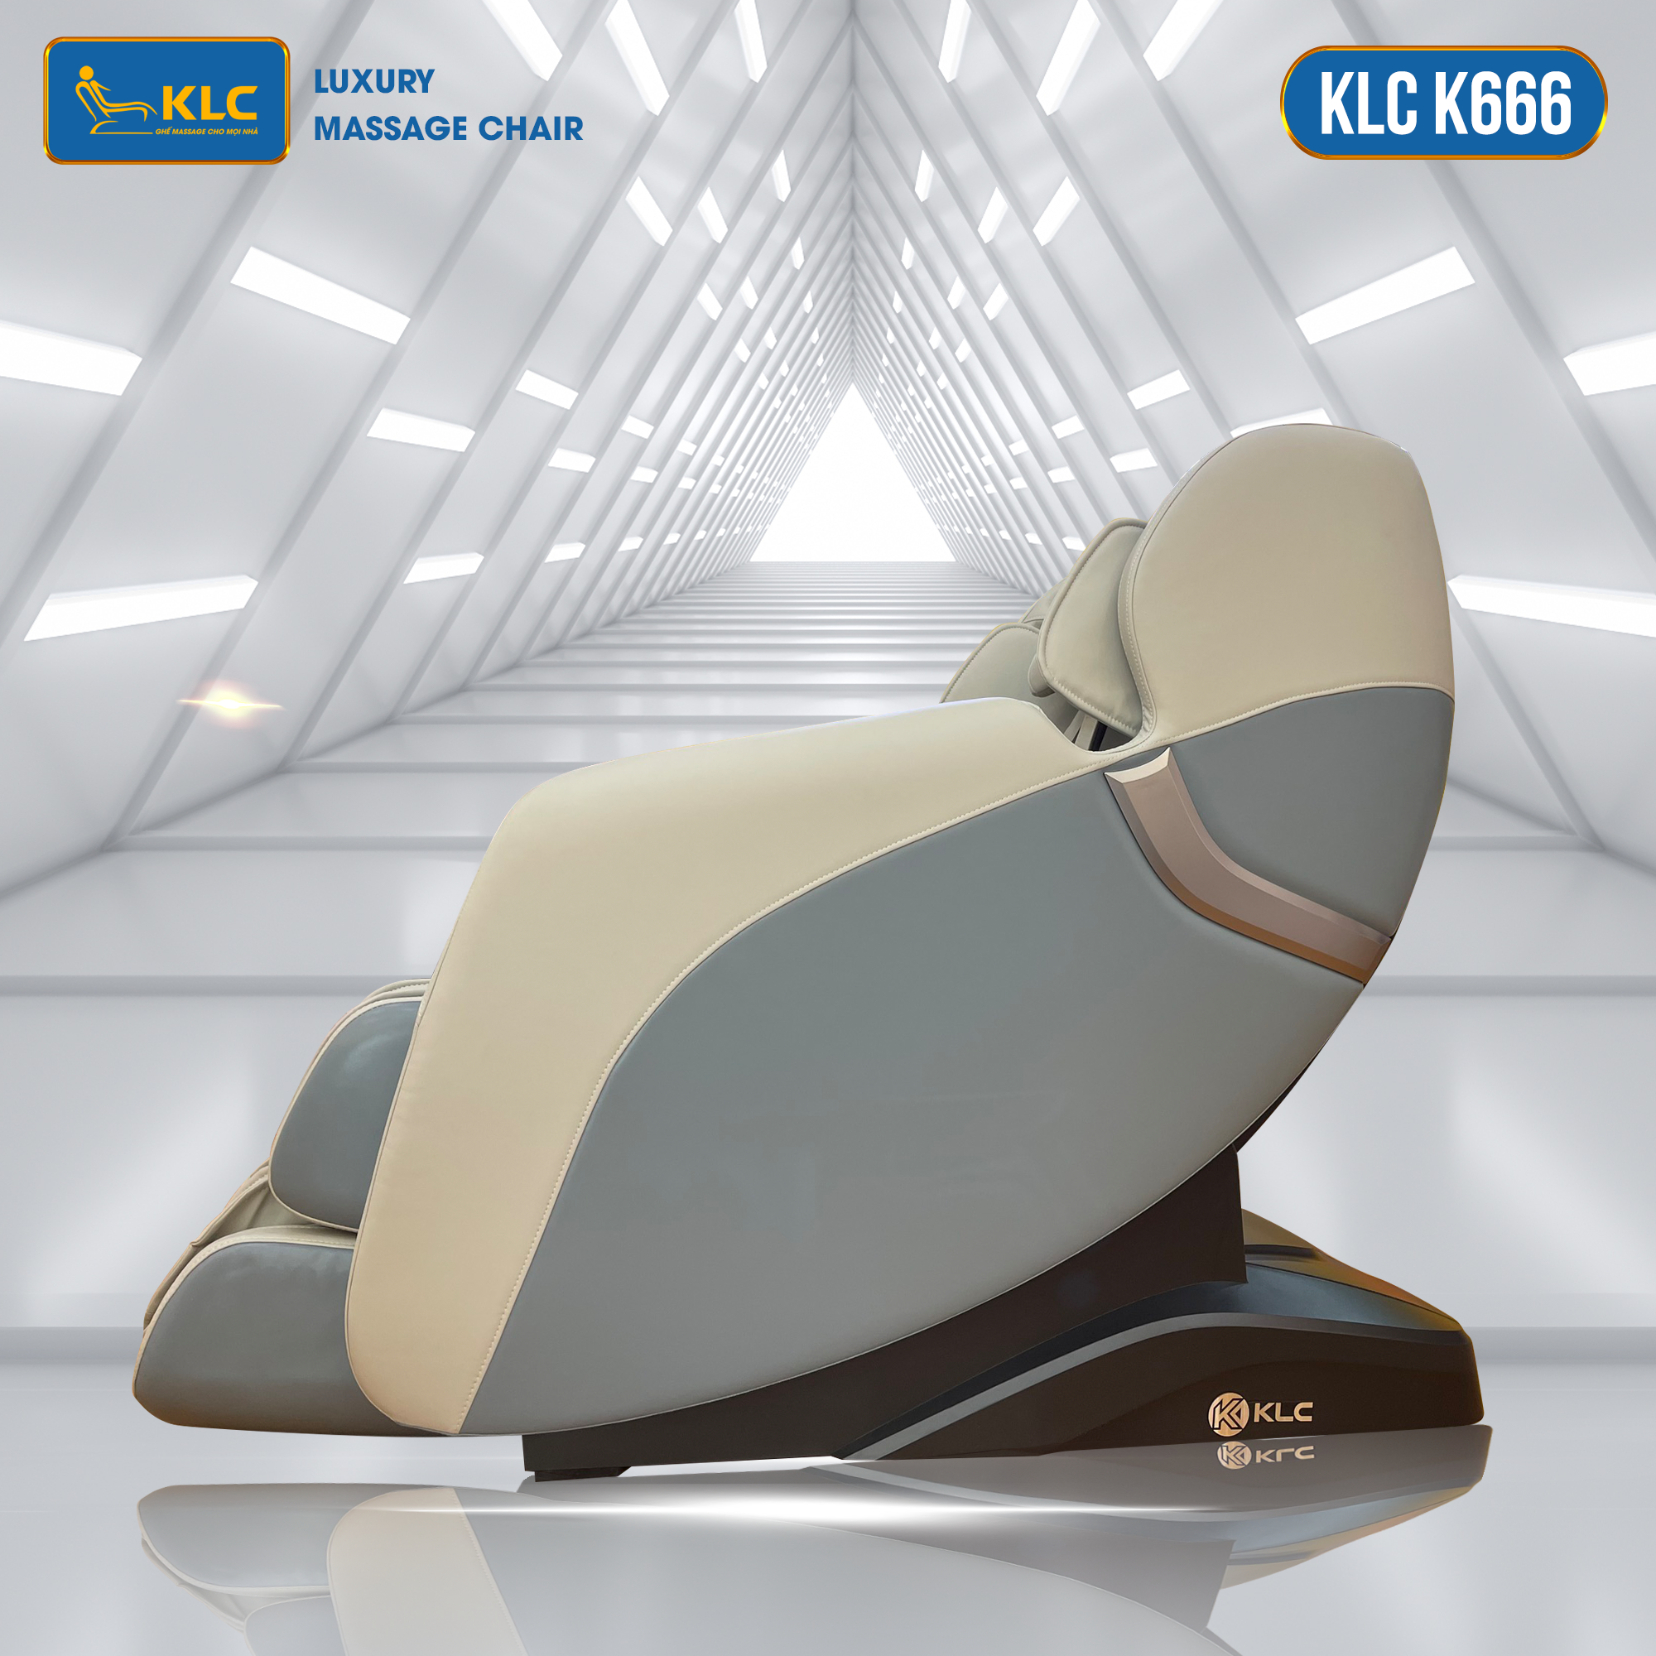 Ghế massage chính hãng KLC K666